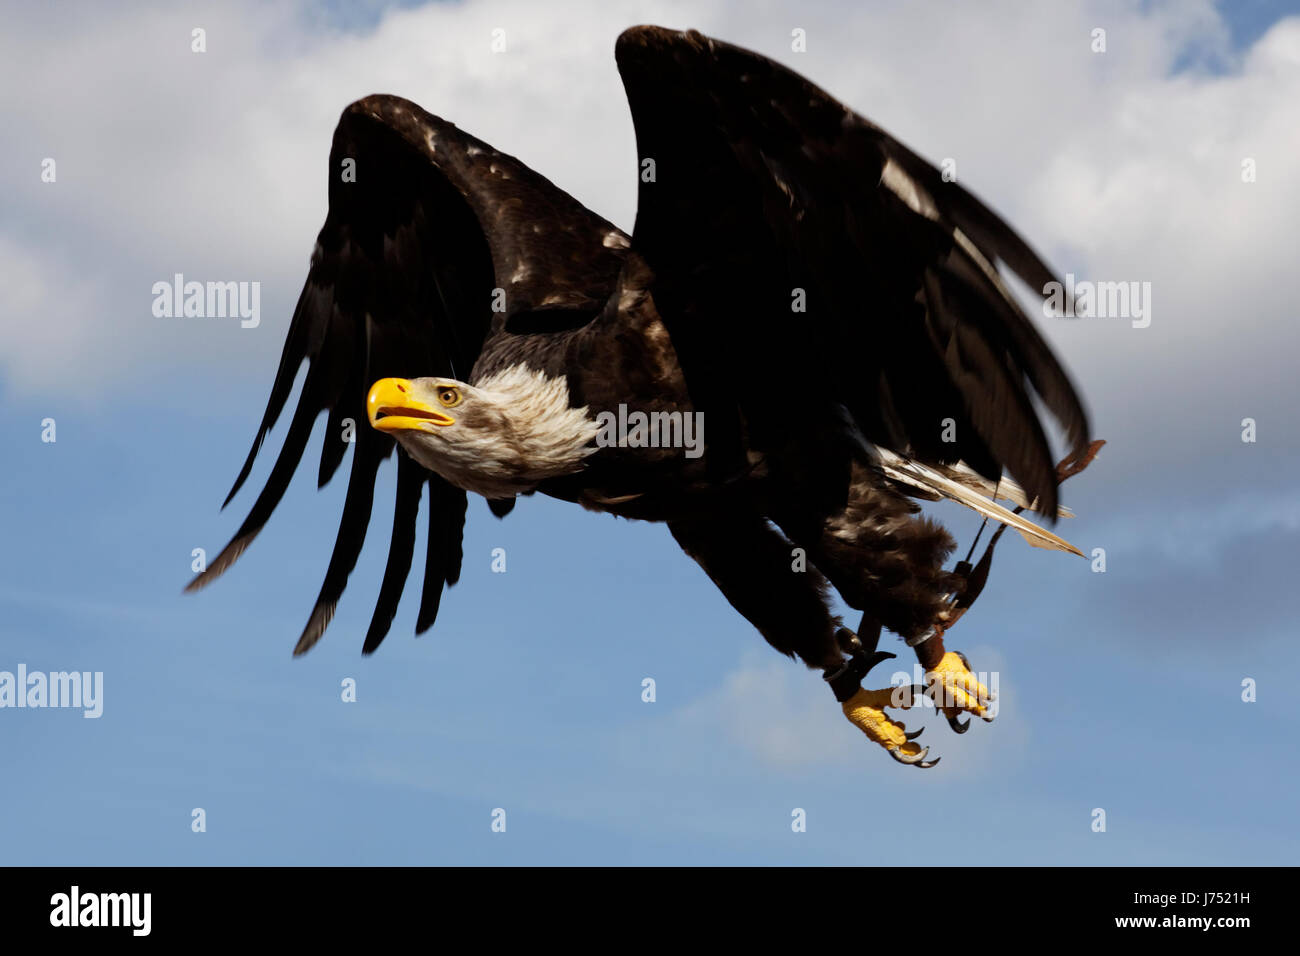 Les oiseaux de proie prédateurs rapaces fauconnerie falconer eagle fly mouches mouches voler Banque D'Images